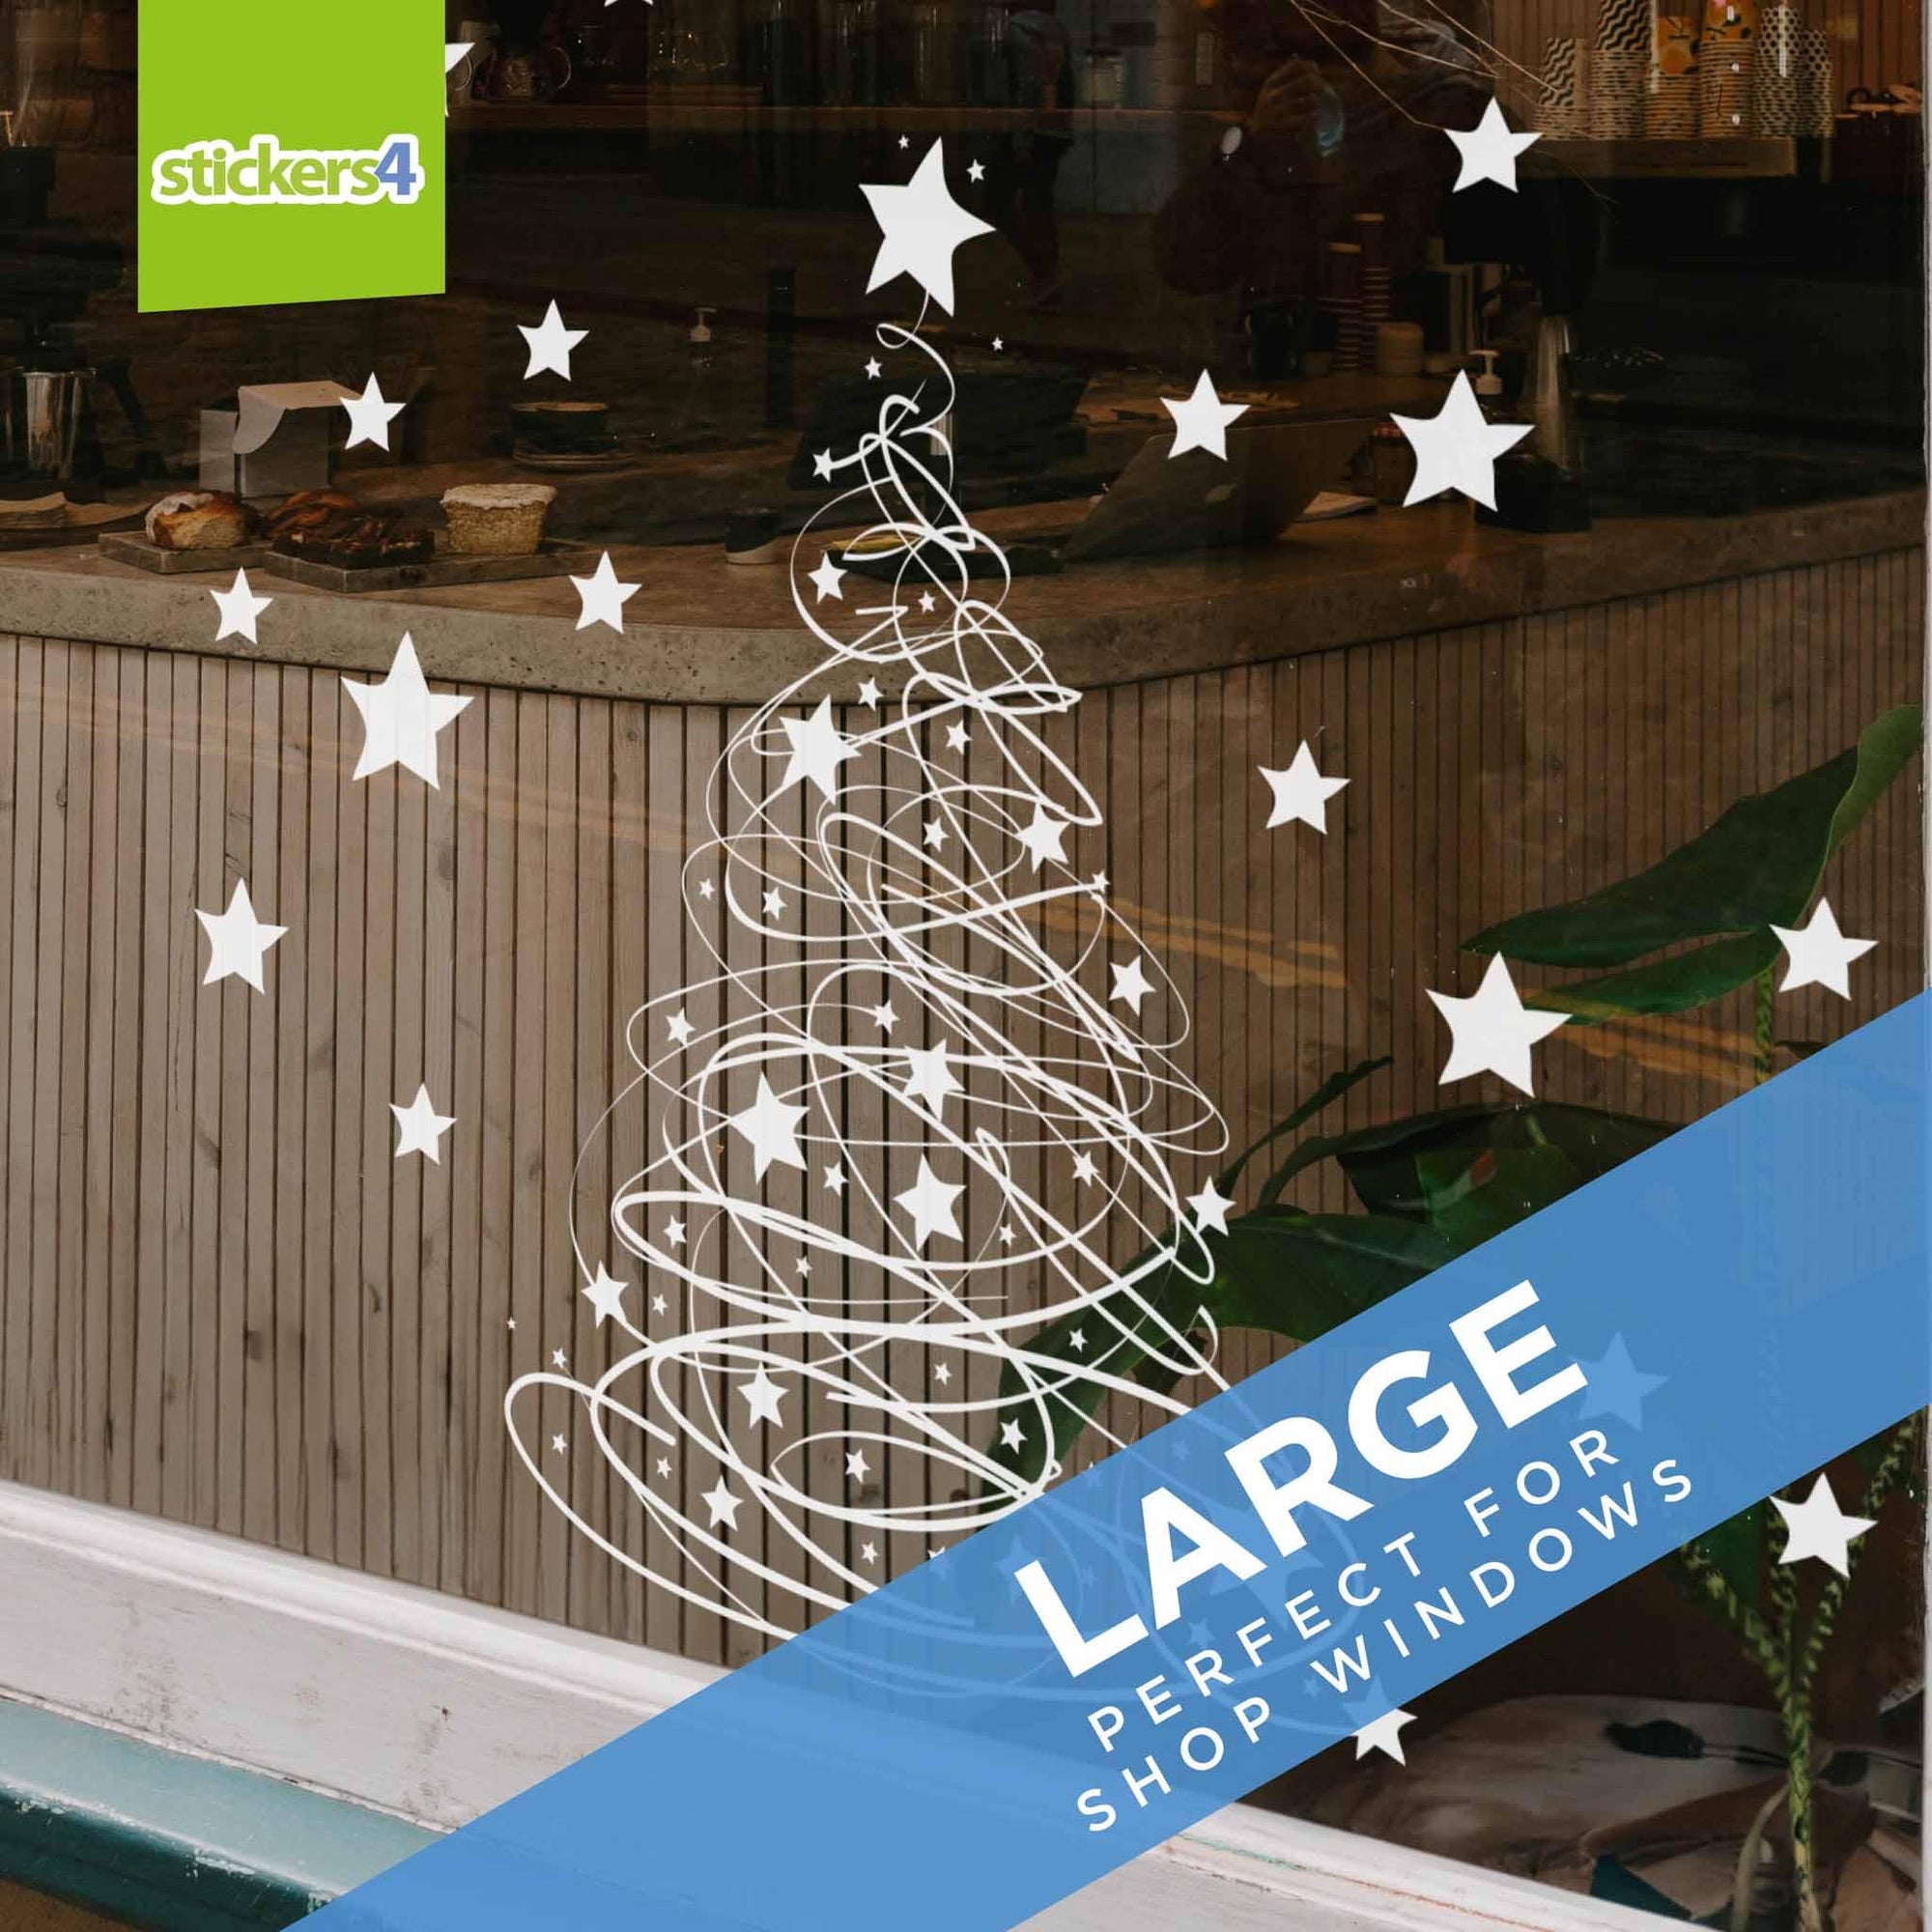 Swishy Tree Christmas Window Sticker - Now with Added STARS! Christmas Window Display